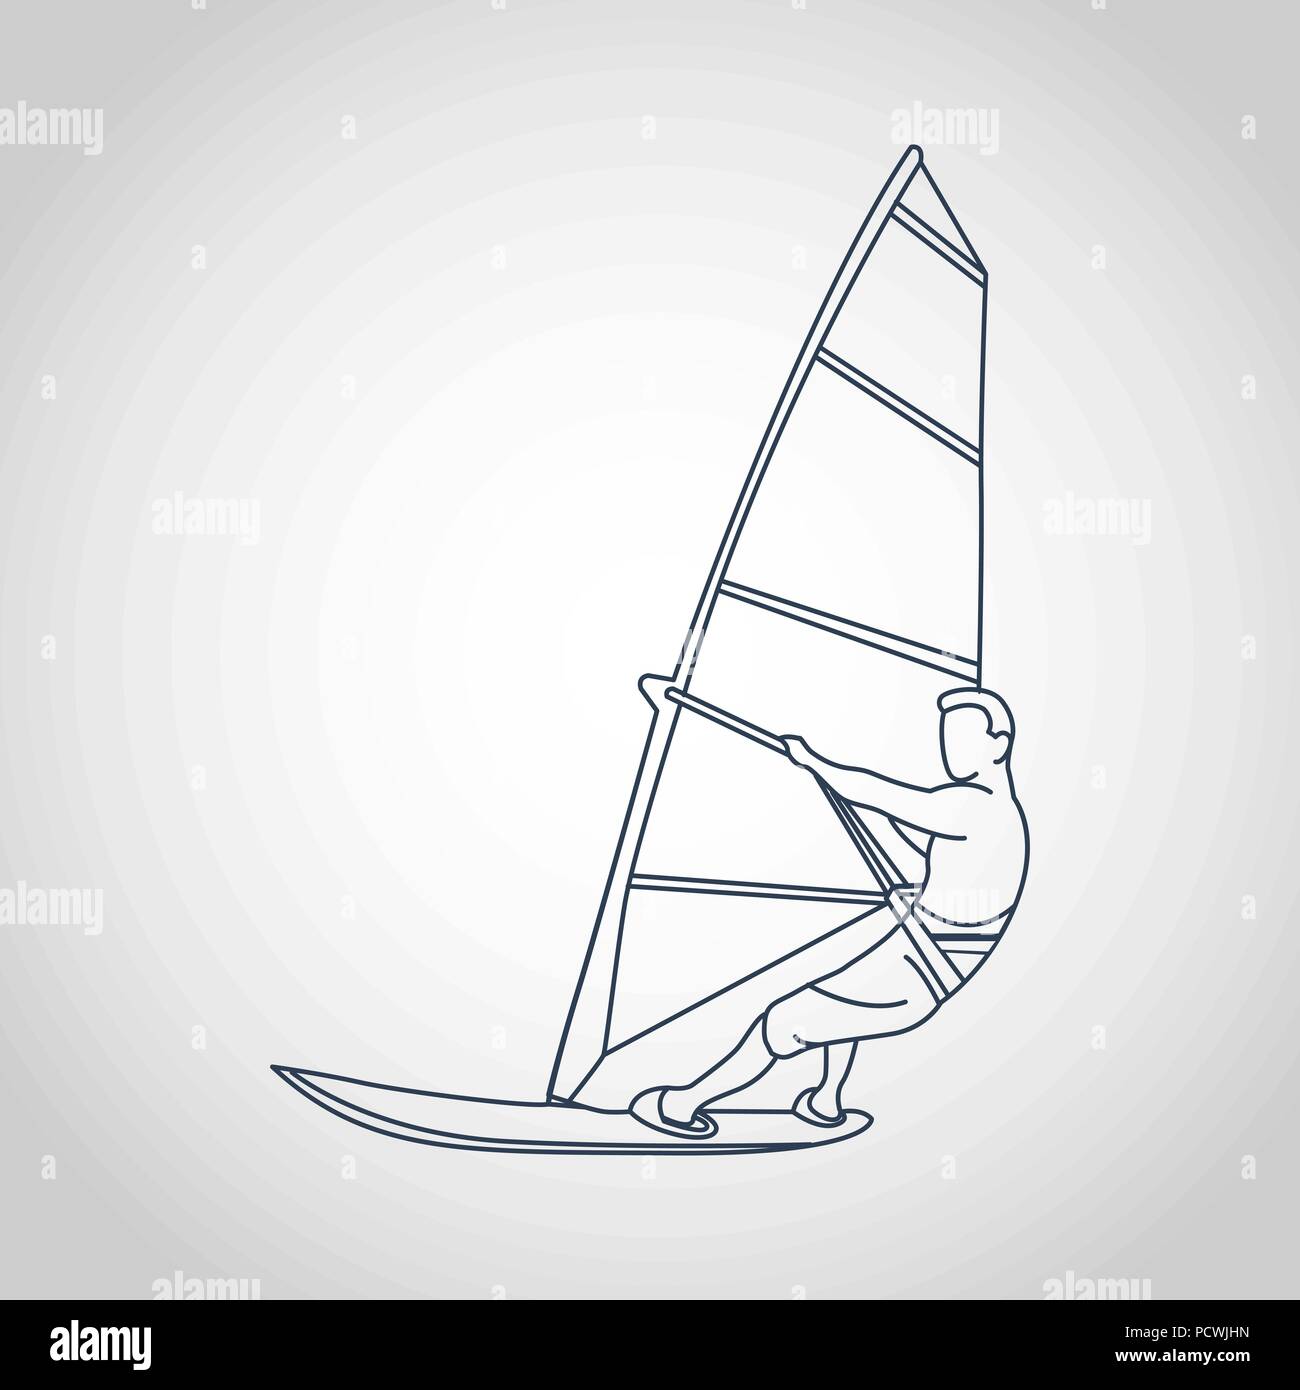 Man windsurfing vector illustration Stock Vector